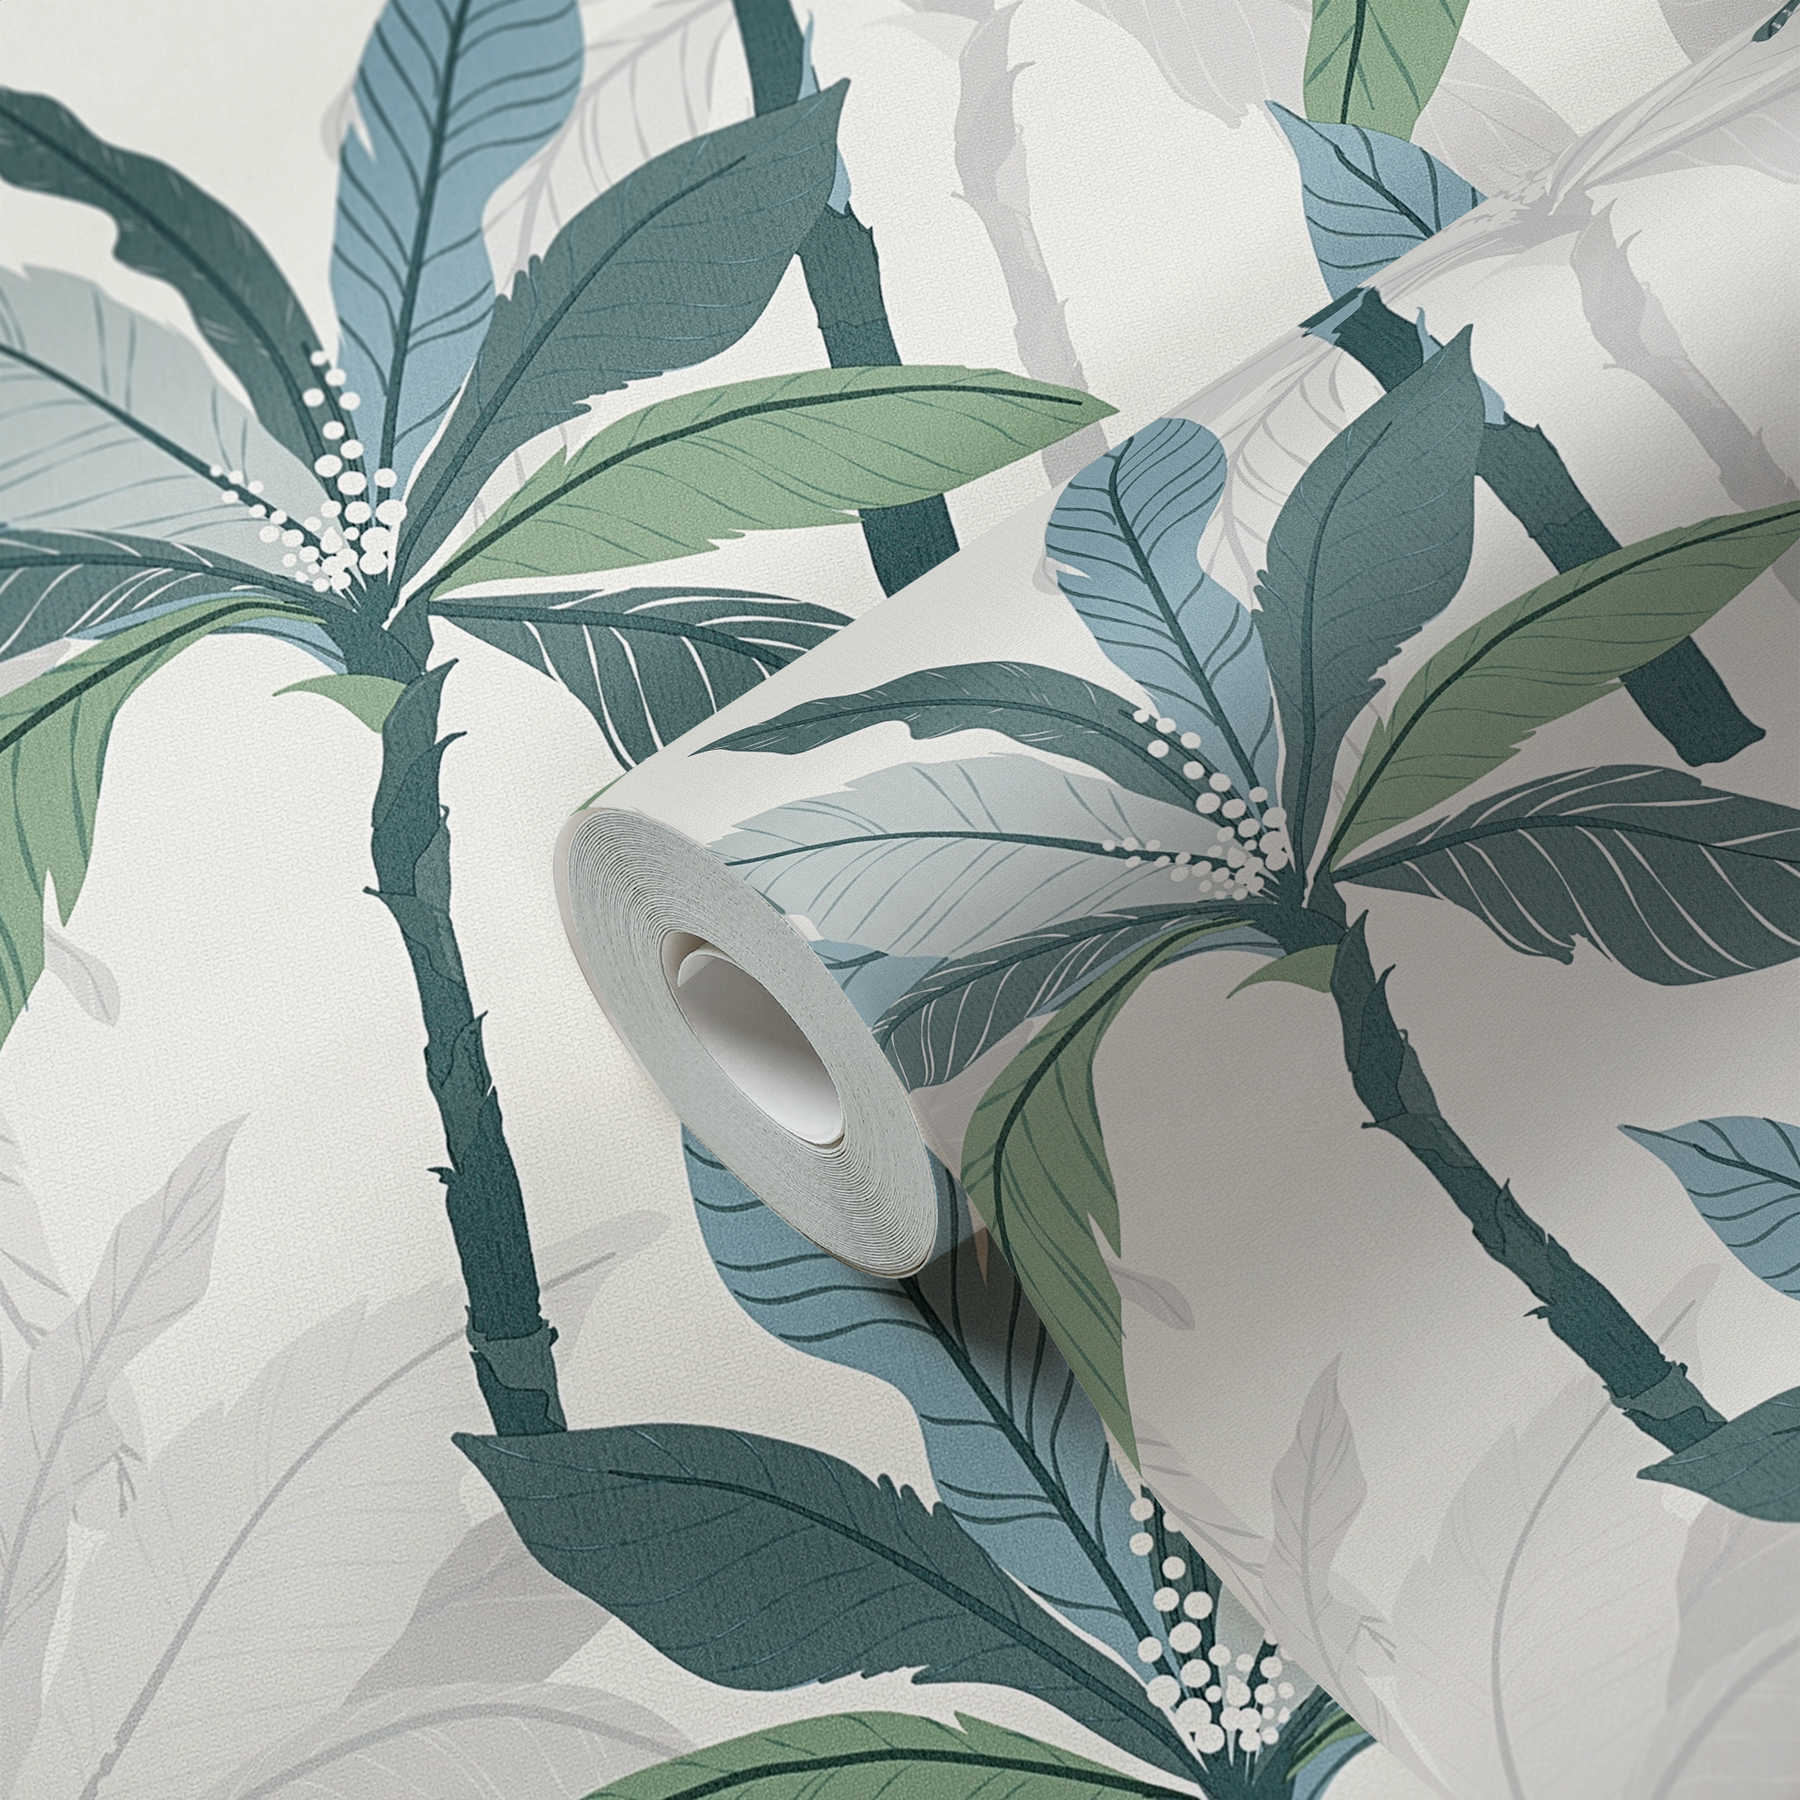             Tropisch behang met palmboom design - blauw, groen, wit
        